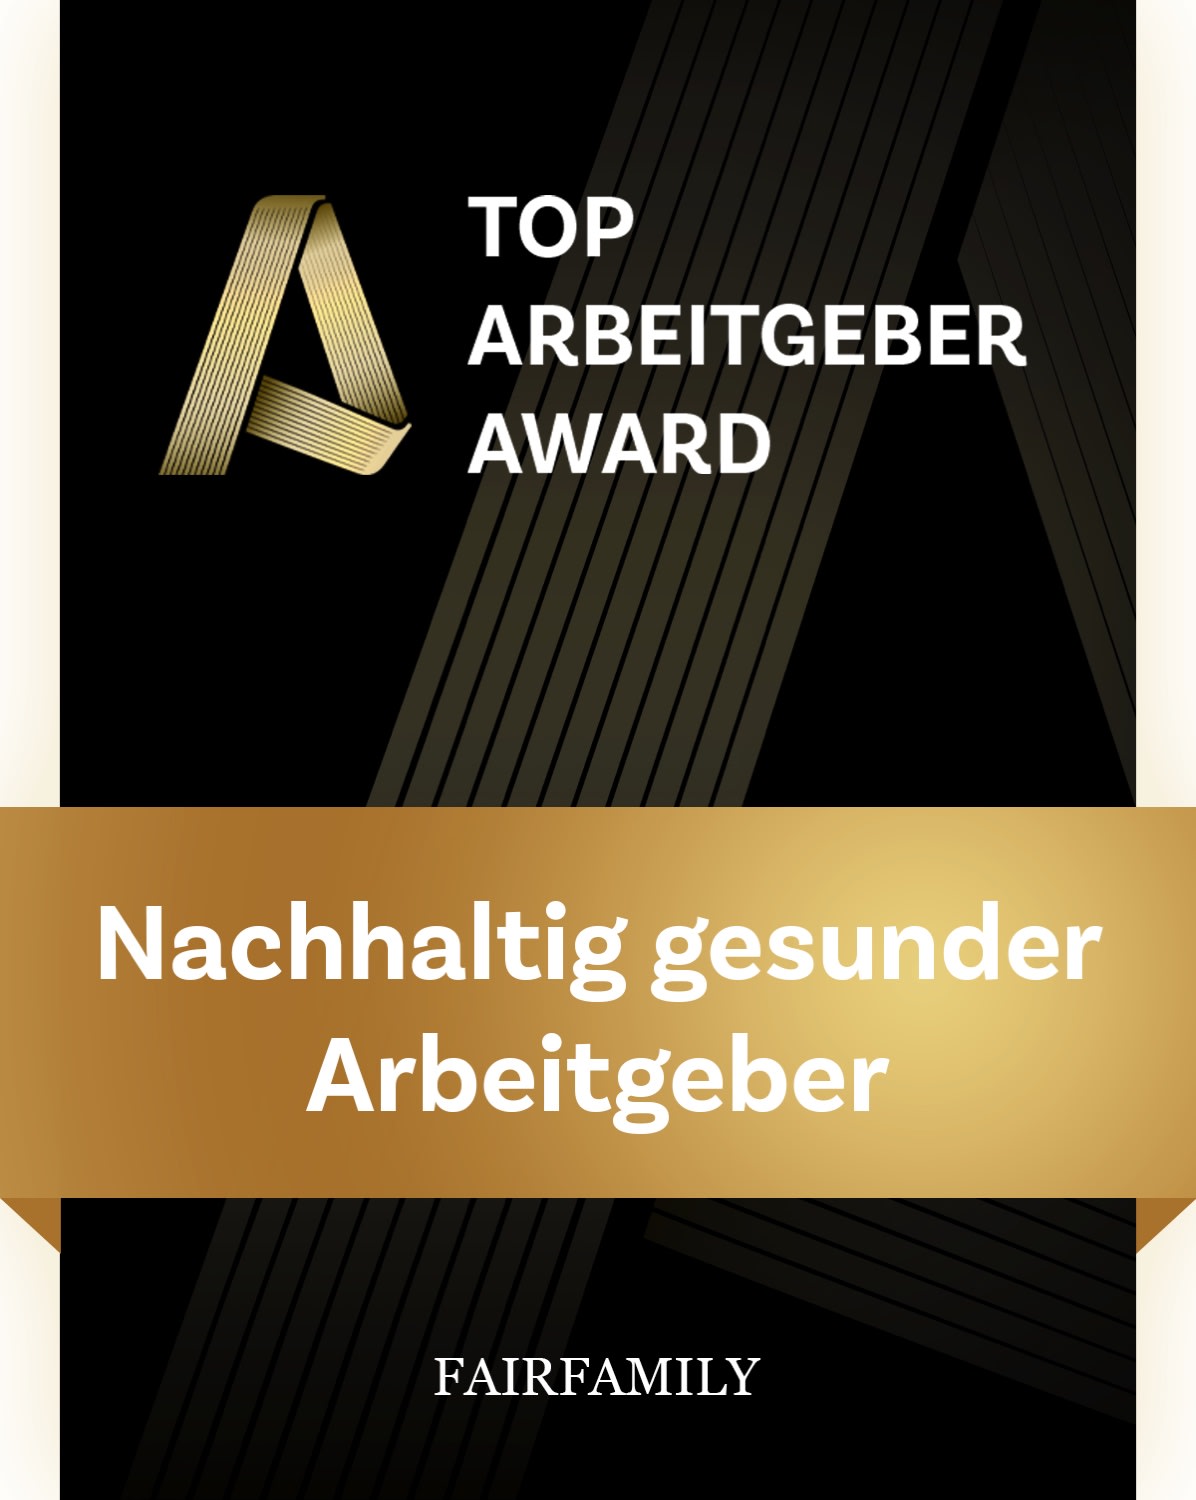 TOP Arbeitgeber award